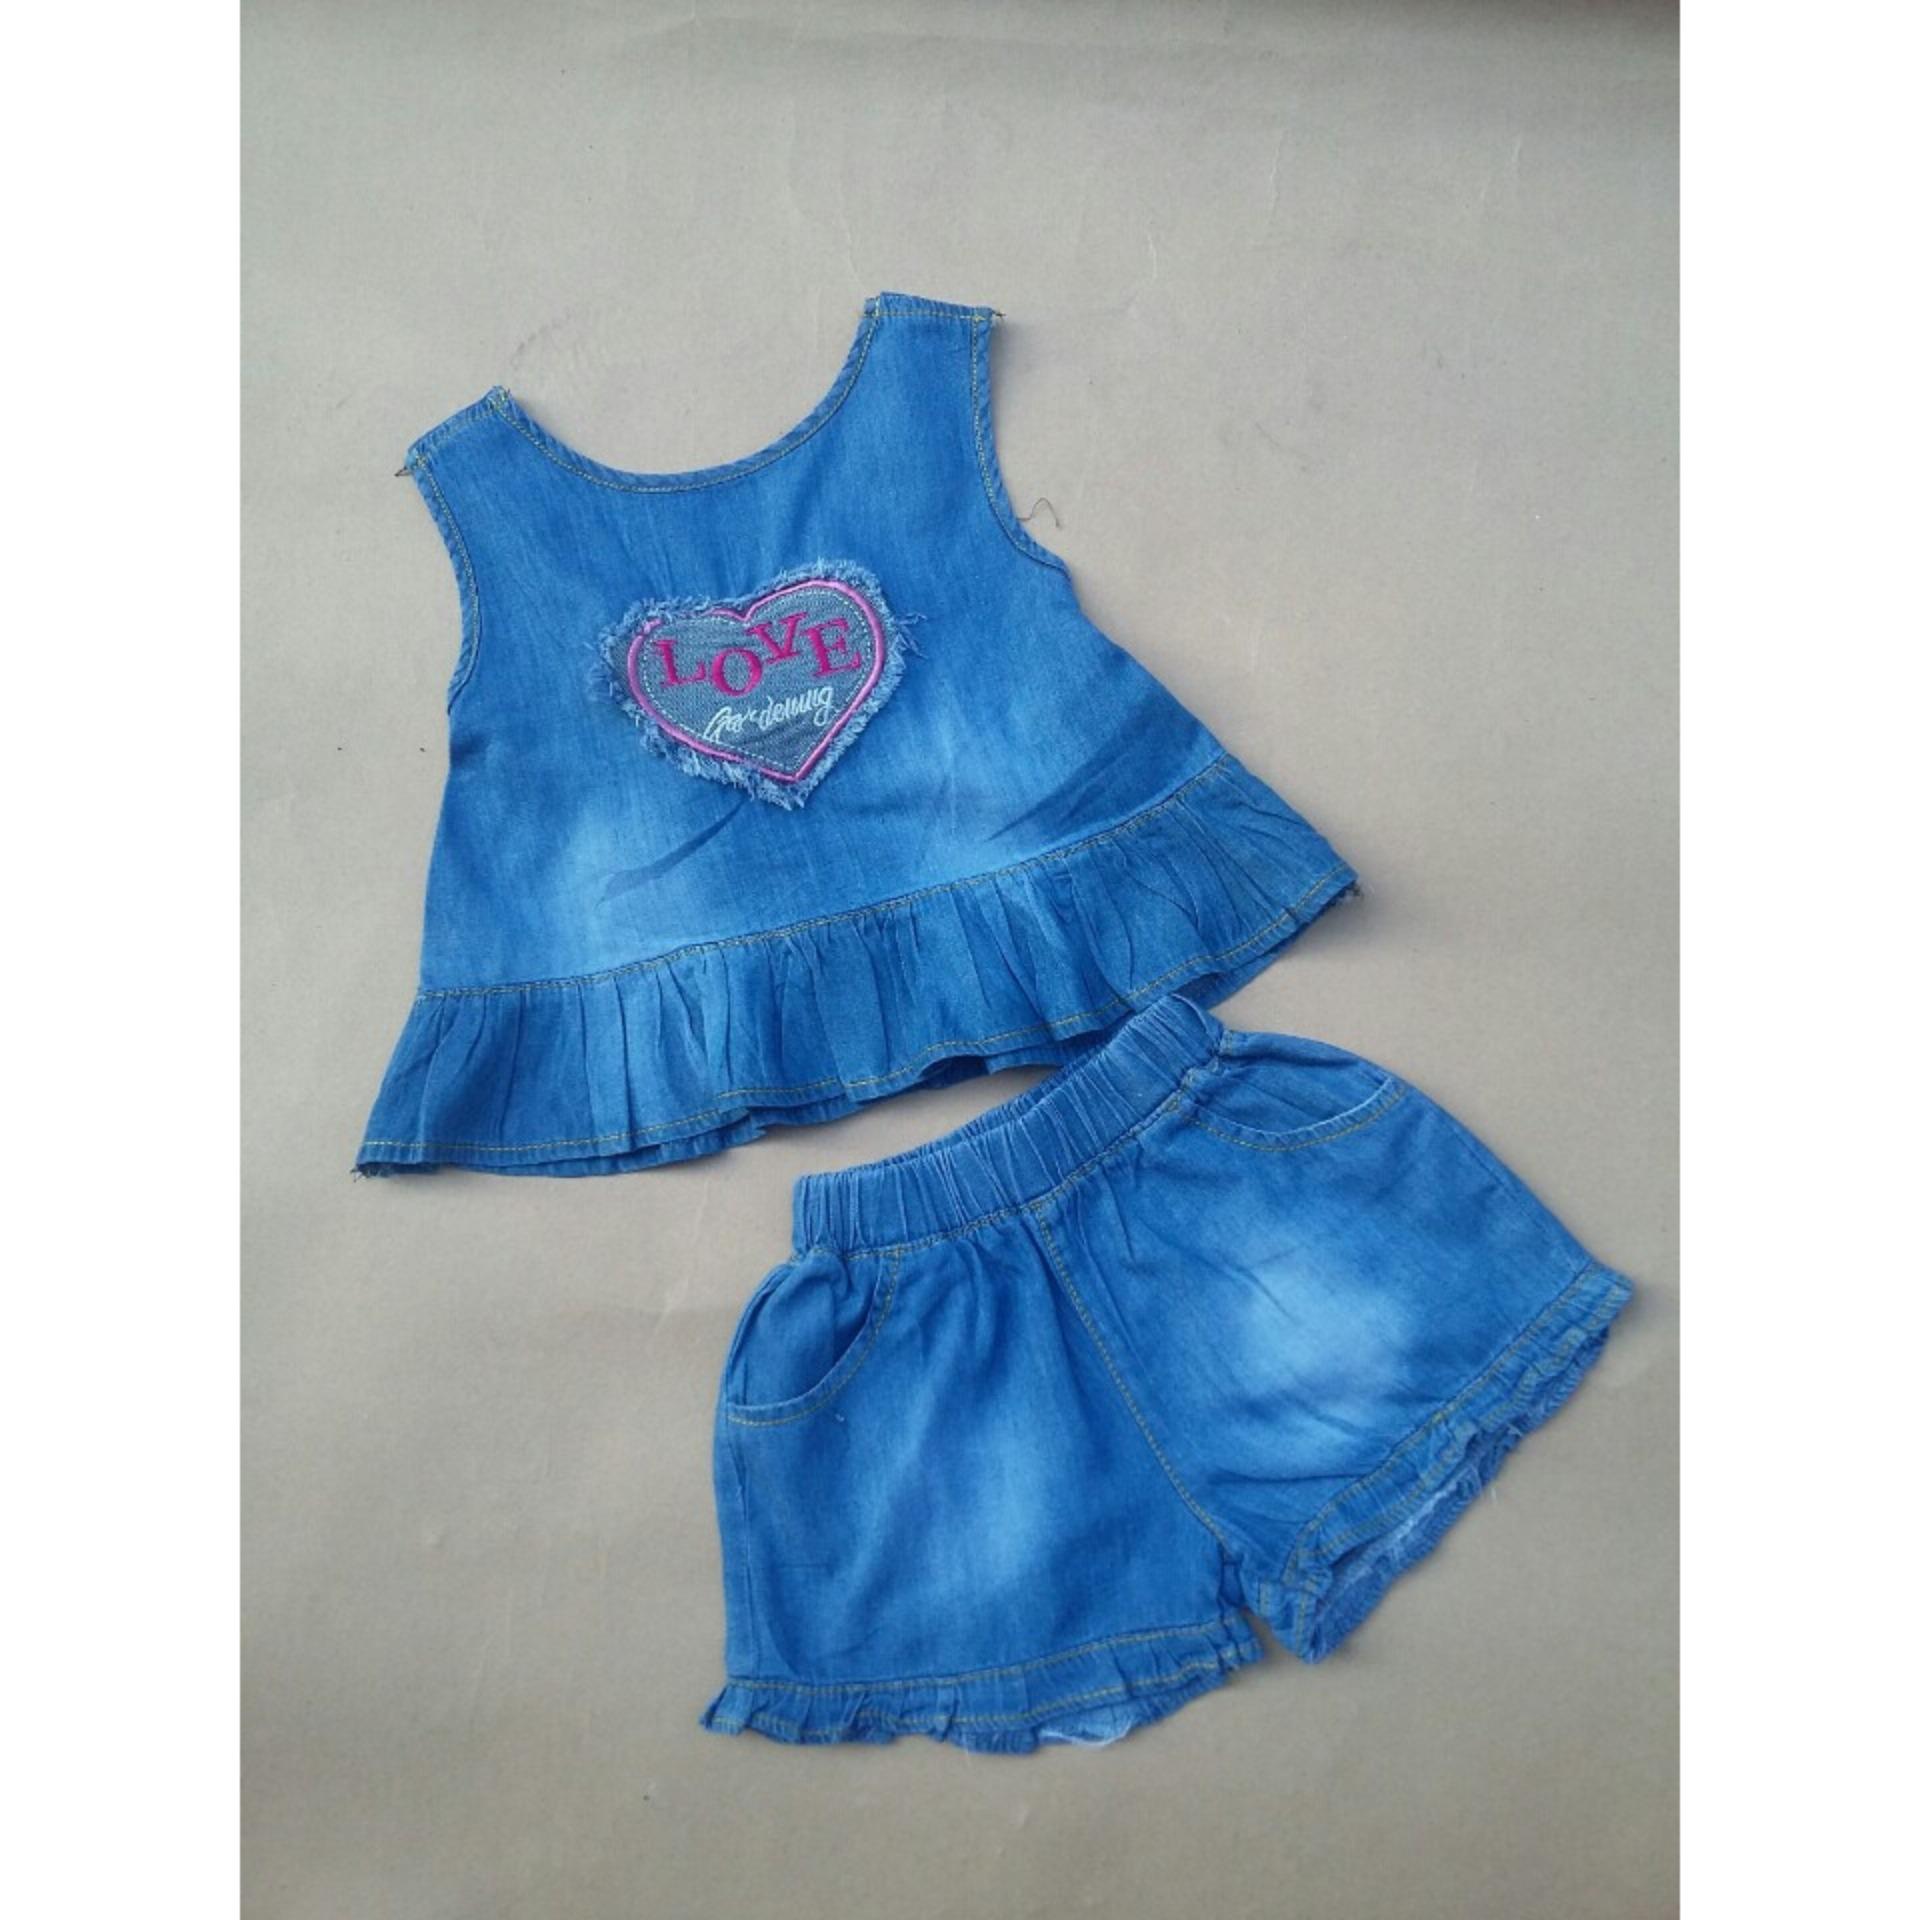 Bộ quần áo cho bé gái - Hoạ tiết phối nơ sau lưng - mã BDA001 (SIZE 1-8)